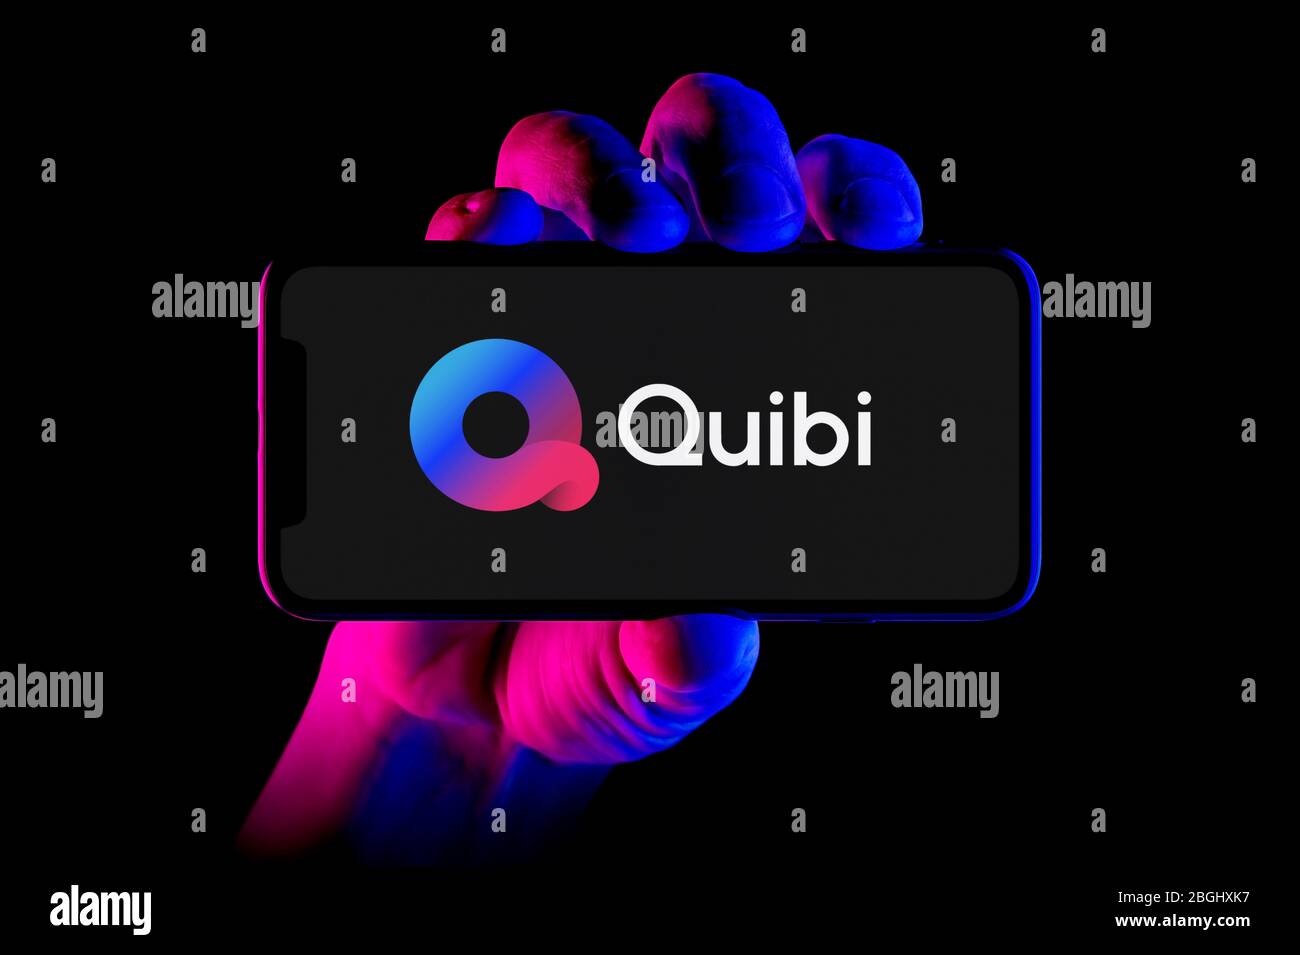 Un smartphone affichant le logo de l'application Quibi est placé sur un fond noir (usage éditorial uniquement). Banque D'Images